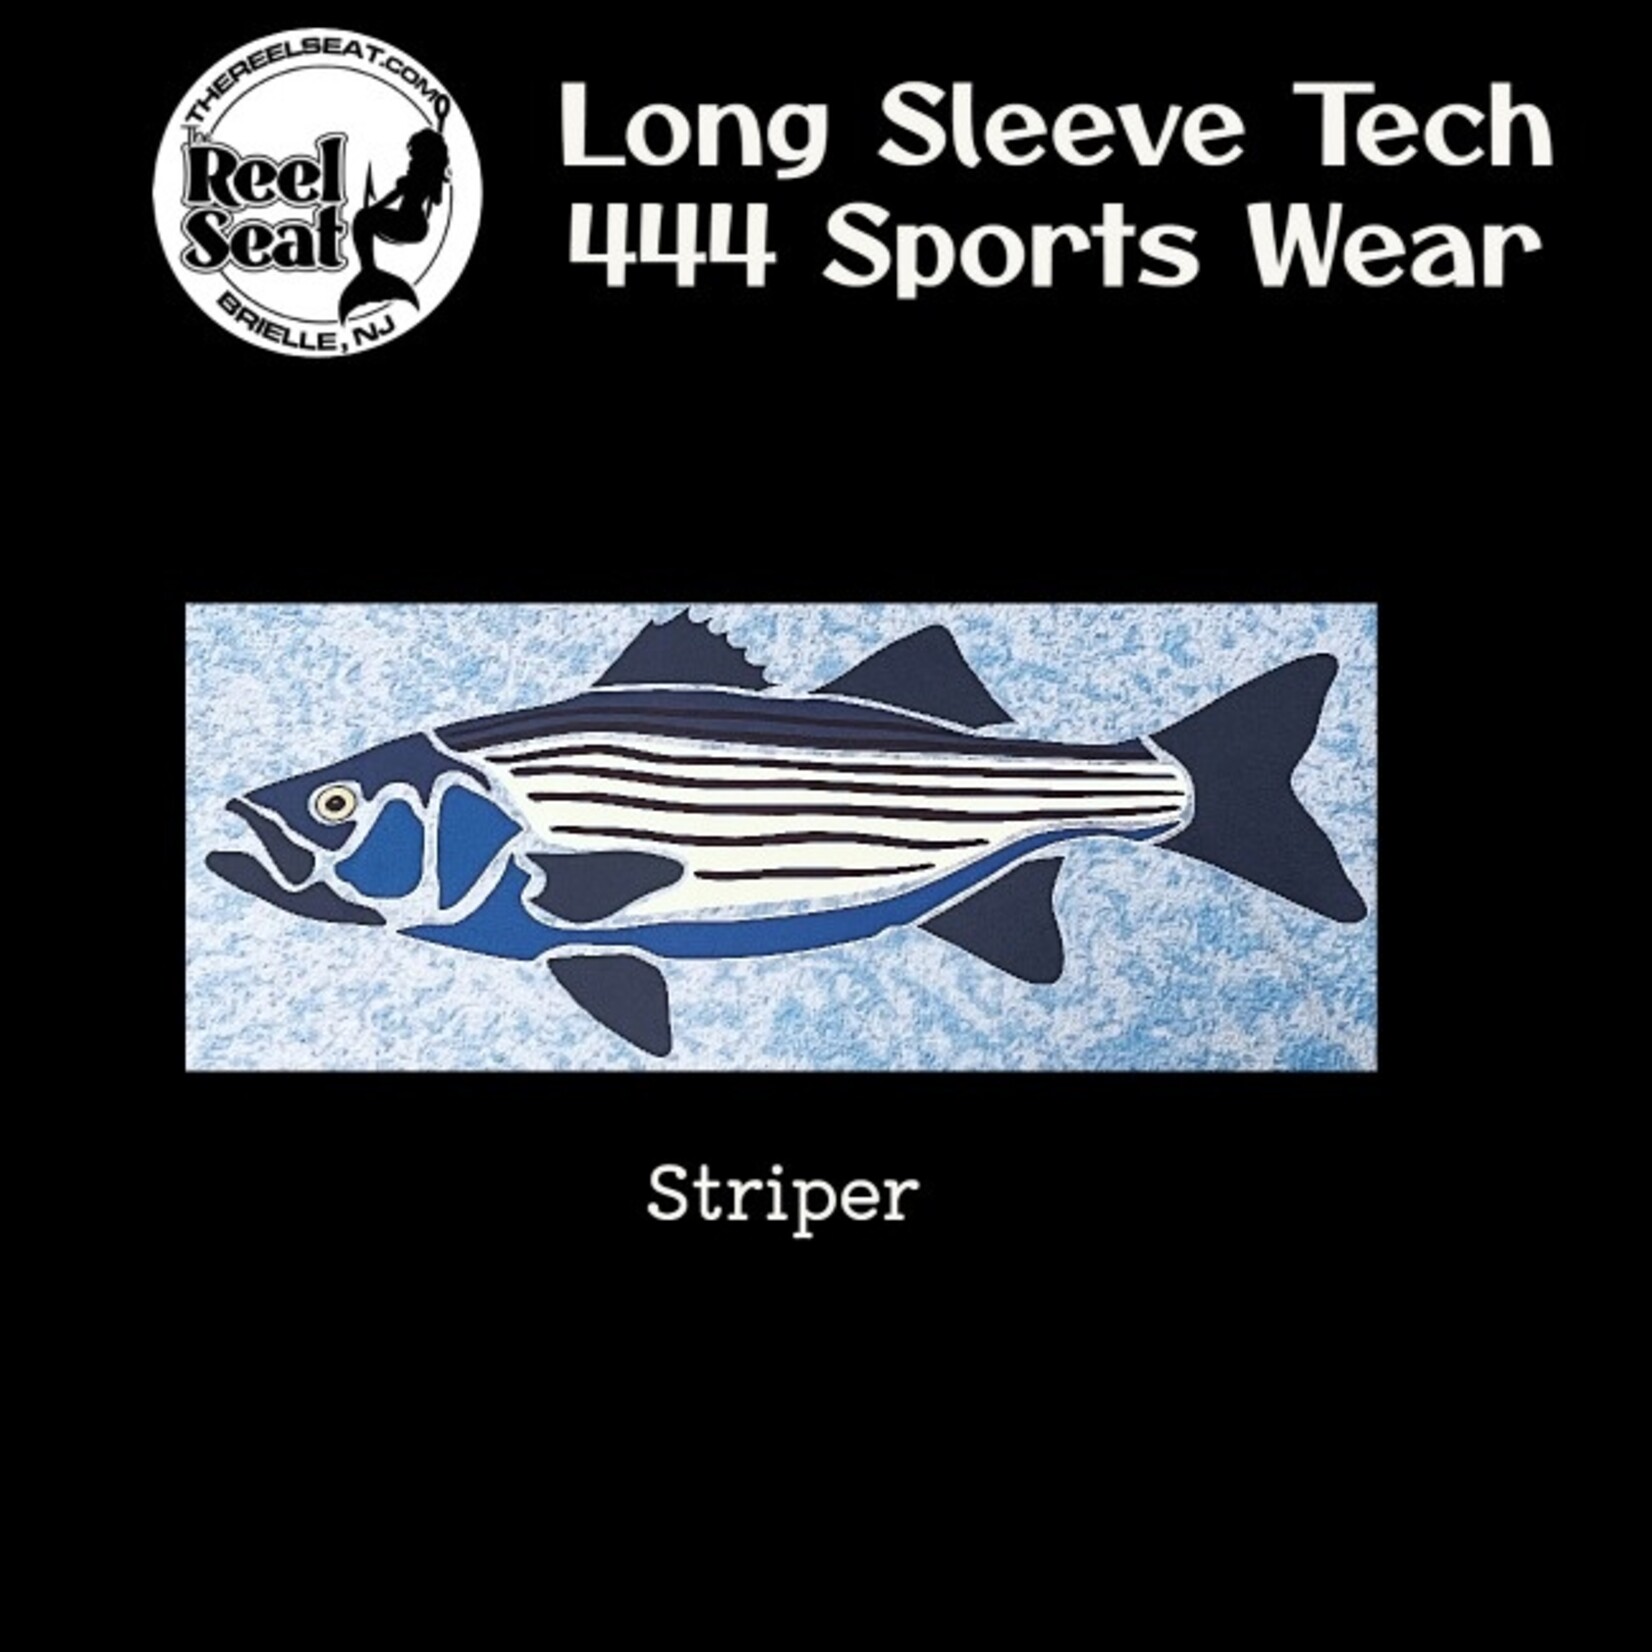 RS Long Sleeve Tech 444 Sports Wear